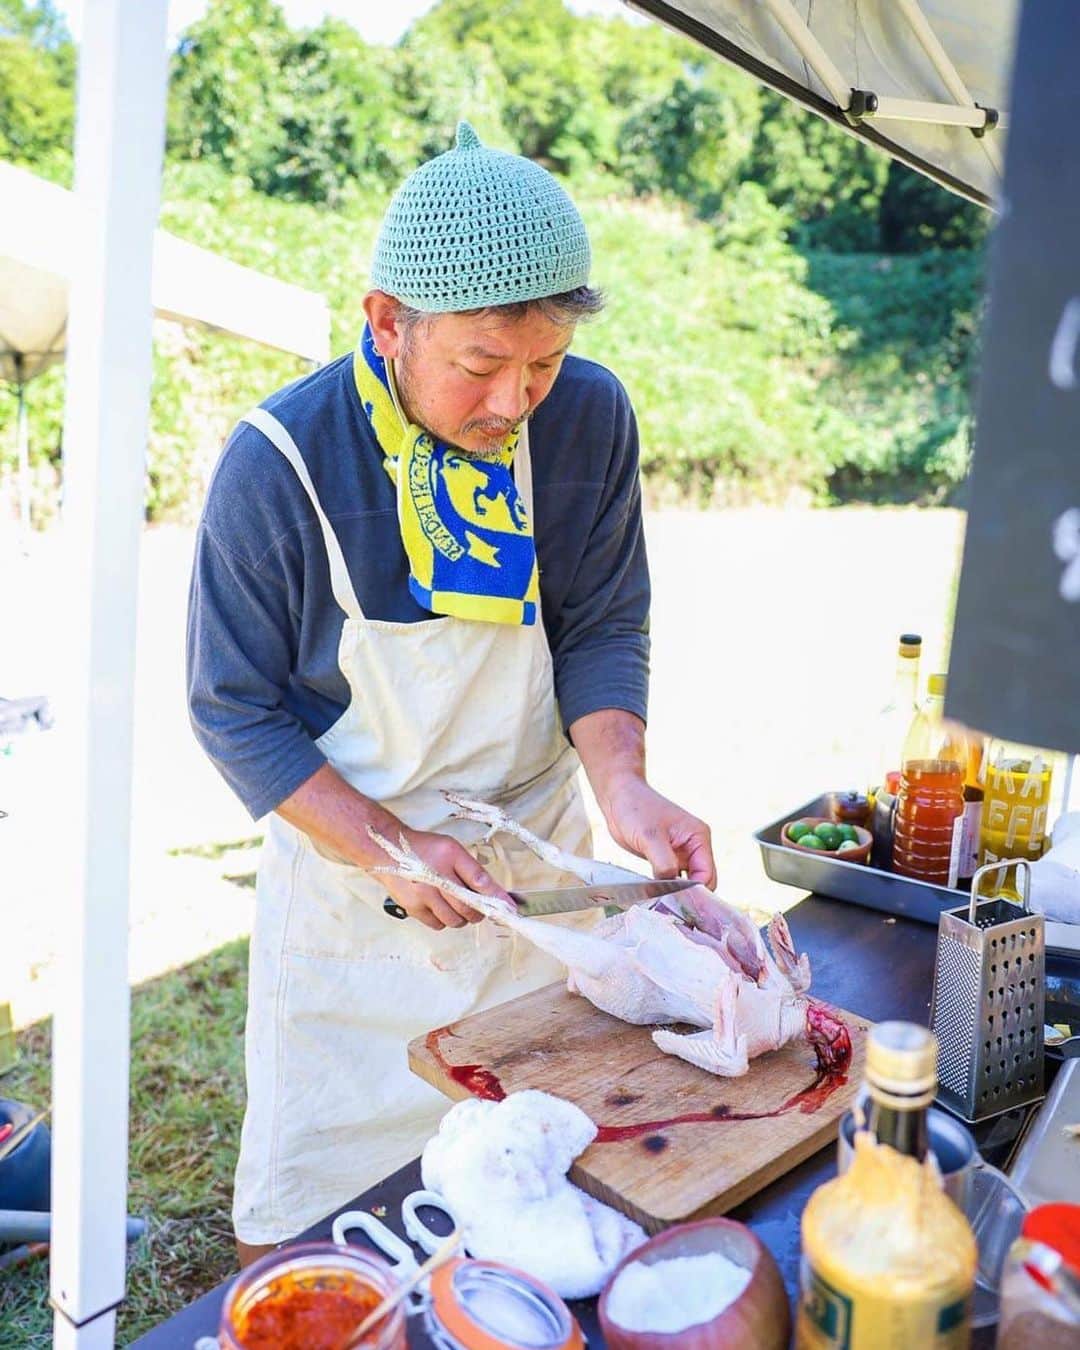 三浦友加さんのインスタグラム写真 - (三浦友加Instagram)「Umui Emikoさんの緊急参戦が決定！  “入場料が野菜”の新しい形の「食×音楽」の 体験型交流イベント『ギブミーベジタブル』 @庄内　風と土の美術館   10月22日（日） 　酒田市の鳥海高原の家族旅行村で開催されます。  「庄内　風と土の美術館 ～アート＆マルシェ～」   ▼オフィシャルWebサイト https://shonai-art.studio.site/  ご参加頂きます、皆さんを紹介させて頂きます。  ◎ 池田義文さん（奈良）  ギブミーベジタブル代表、発案者。 2016年からは、音楽、食、絵画、立体物、装飾、空間演出など様々な創造的方法で新しい ”アジア”的感覚生み出そうとする「新亜細亜的超越感覚～Neo Asian Super Sense」を主宰し、堺市が後援につき2019年5月には世界三大古墳である、仁徳天皇陵古墳前で新亜細亜的超越感覚を開催した。大阪の民謡、河内音頭のギタリストとして、奈良の東大寺をはじめとする関西地方の数々の祭りの櫓にて演奏をする。様々な活動が評価され2014年、環境省、一般社団法人ロハスクラブ主催「ロハスデザイン大賞2014」のヒト部門にノミネート。  ギブミーベジタブル HP: http://www.givemevegetable.com/  今回のギブミーベジタブル お料理に関わる皆さまをご紹介いたします！  ◎ 三原寛子さん（東京）  南風食堂 料理ユニット「南風食堂」主宰。 東京・新木場「CASICA（カシカ）」、下北沢「発酵デパートメント」の料理ディレクション、レシピ制作、商品開発などを手掛ける。アーユルヴェーダの料理教室『mahat tuning cooking class』を開催。著作に『WHOLE COOKING』『乾物の本』など。国際中医学薬膳師、インド政府公認機関BSS認定アーユルヴェーダセラピスト。  ◎ 斎藤夏子さん（鶴岡）  庄内鴨を育てております三井農場直営店 「庄内鴨とおいしいやきとり　ととこ」店主。 庄内の大地の恵みを受けて育った庄内鴨の解体デモンストレーションの機会をいただきました。 地域循環という自然のながれの一部分をお見せできたらと思います。  ◎ 古門浩二さん（鶴岡）  gira e gira (ジーラジーラ）店主。 神奈川県生まれ。 3年程イタリアへ。 山形に移住し庄内野菜と魚介のシチリア食堂Bedda Siciliaを開店。2022年移転改名しgira e gira (ジーラジーラ）に。 月に１、２度国内外問わず旅をしながら、独自の料理を表現し続けている。  ◎遠田恵美子さん（酒田・八幡地域）  大沢地区・青沢在住、大沢んめちゃんズ 会長 大沢地区の食生活改善推進協議会　会長（１３年目） 八幡地域の食生活改善推進協議会　会長 酒田市八幡地域大沢地区を拠点に、暮らしの中の家庭料理、郷土料理を長年研究し、笹巻きやしそ巻きを若い世代に伝える体験会なども開催。  ◎吉野敏充さん（新庄）  「吉野敏充デザイン事務所」代表 クリエイティブディレクター 山形県新庄市生まれ。東京デザイン専門学校卒業後、SOFT ON DEMAND、SOD artwokrsを経て吉野敏充デザイン事務所を設立。 様々な案件のクリエイティブディレクションを手掛ける。 同時に、地域の伝承野菜（在来野菜）や工芸品を後世に繋いで行くプロジェクトの企画・運営も手掛ける。 地元である新庄最上・山形県の地域資源を活用したプロジェクトとして、地元産農作物などの販売を行うマーケット『kitokitoMarche』、山形県新庄・最上地域広域情報誌『季刊にゃー』の制作・発行、山形県の工芸品のリデザイン・販路支援プロジェクト『山から福がおりてくる』の運営、新庄の後世に残す食のプロジェクト『新庄いいにゃ風土／SHINJO ii-nya FOOD』のプロデュースなど。  　 ◎マジカルパパさん（秋田）  代官山三宿食堂から恵比寿駅前食堂店長を経て04年に拠点を秋田県に移し、青い鳥のレストラン、トリノス食堂を開業。途中秋田市の老舗トラットリア道化の館などでキャリアを積み、現在はギャラリーみそ汁というみそ汁スタンドと画廊が合わさったようなお店を秋田市に開店準備中。マジカルパパはお惣菜ブランドの名前です。  ◎ Umui Emikoさん（大石田）  「Umui」店主。 東京にてイタリアンや和食の店などで働いたのち、自身の体調不良や家族の食生活のあり方、外食産業の食材の使い方に疑問を感じ、2011年４月、東京都内に自然食カフェ「Umui」 をオープン。2014年に東京のお店を閉め、山形県新庄市へ移住。現在は、大石田町次年子で廃校利用した陶芸家の工房の二階にてアトリエ兼カフェを開く。伝承野菜や郷土料理のみならず、物語や生活も伝えるごはんの会を開くなど草の根的な活動を展開している。東根のカフェシオンなど、県内各地での出張販売なども精力的に行っている。  続く、、、  #ギブミーベジタブル  #givemevegetable  #風と土の美術館 #山形県 #酒田市 #鳥海高原　 #家族旅行村 #鳥海山 #庄内  #芸術祭 #マイ箸マイ皿マイコップ」10月21日 15時23分 - miurayuka